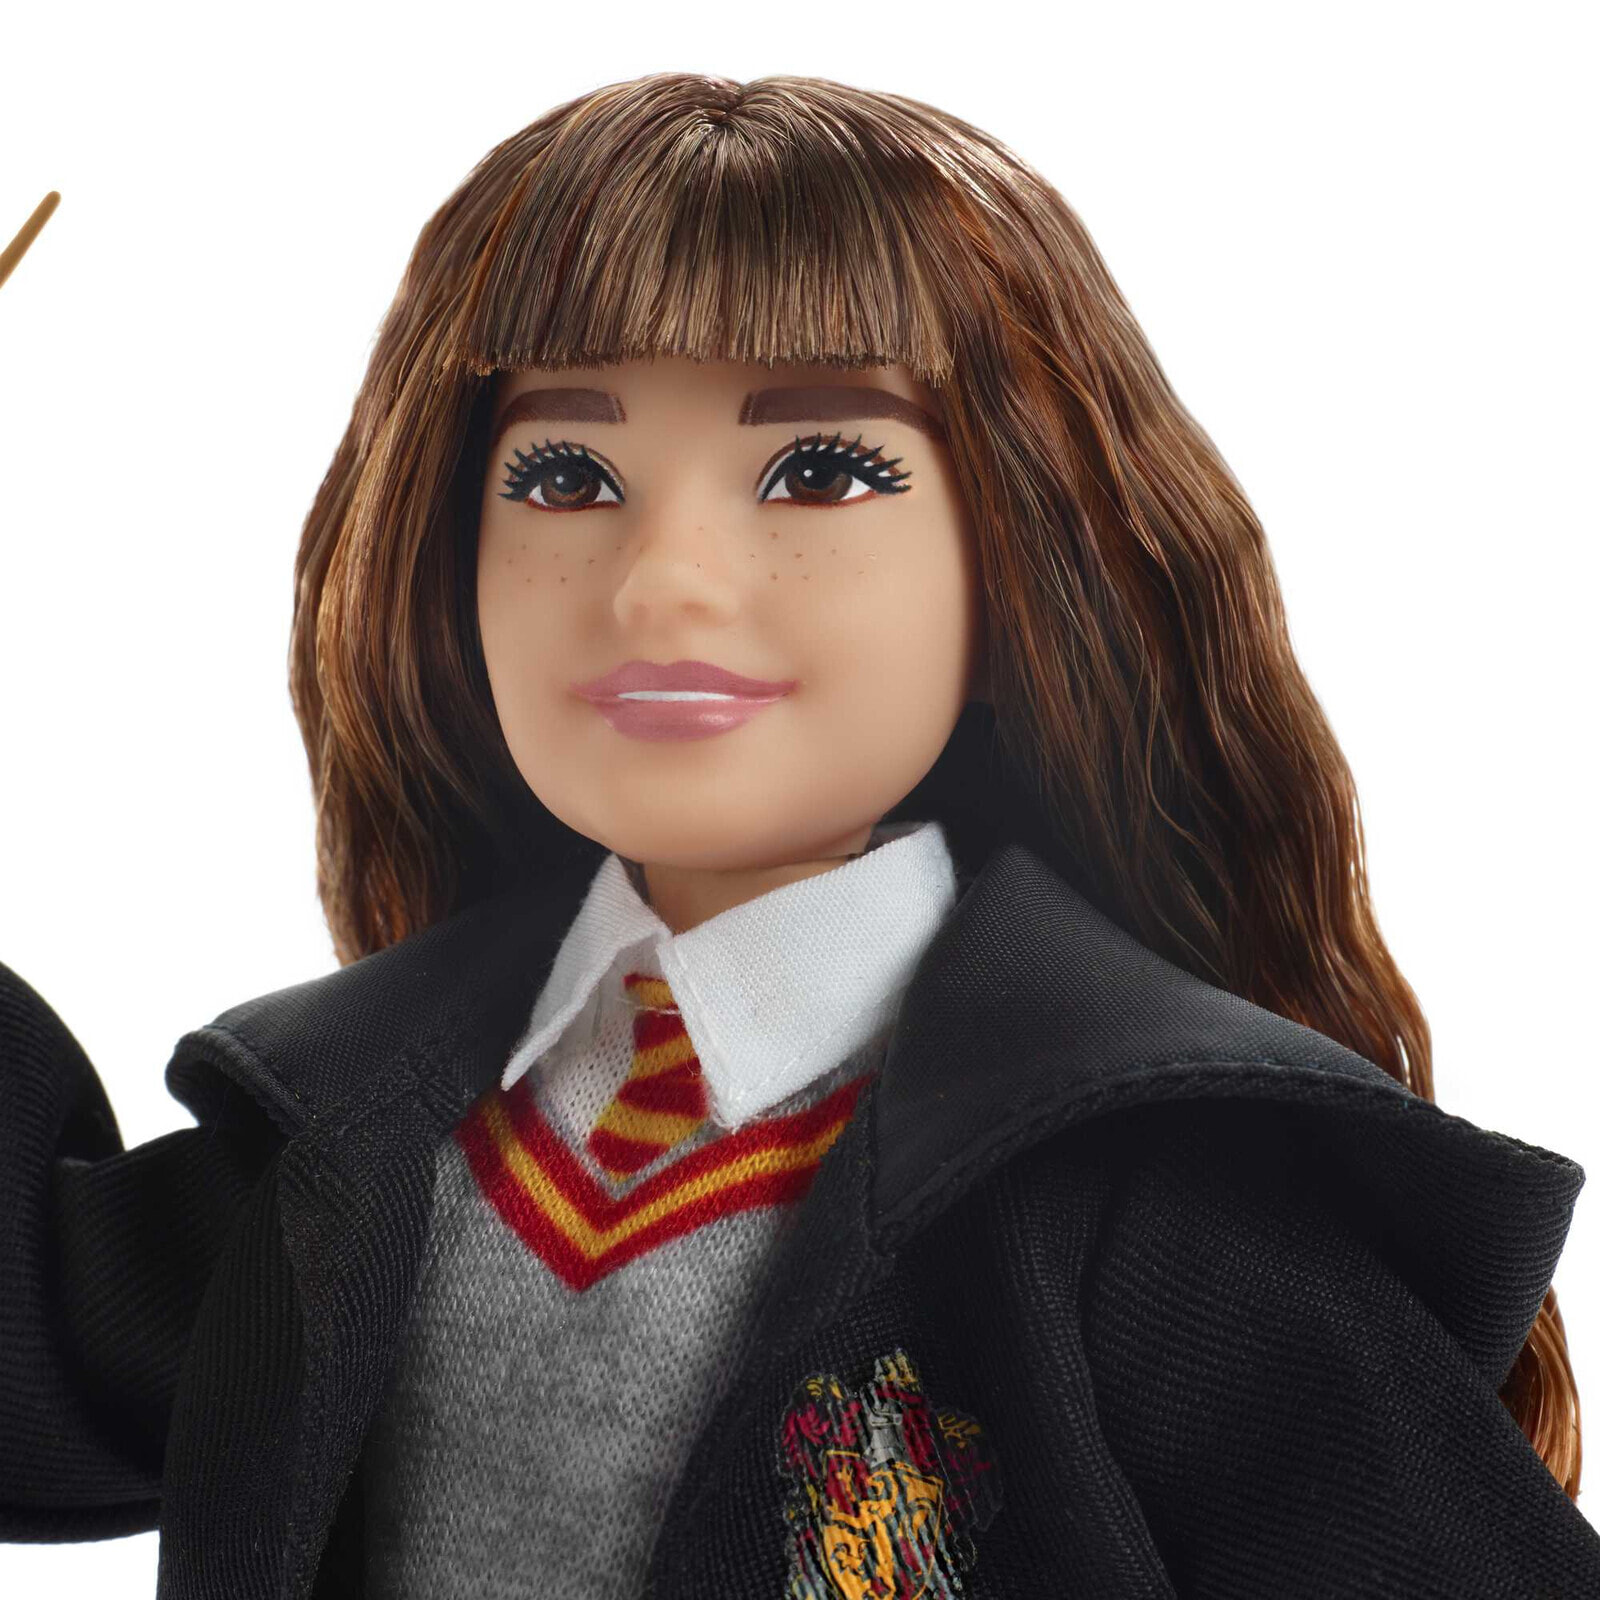 Фигурка кукла Гермиона Грейнджер - Гарри Поттер - Mattel Inc. - Возраст: 6 лет